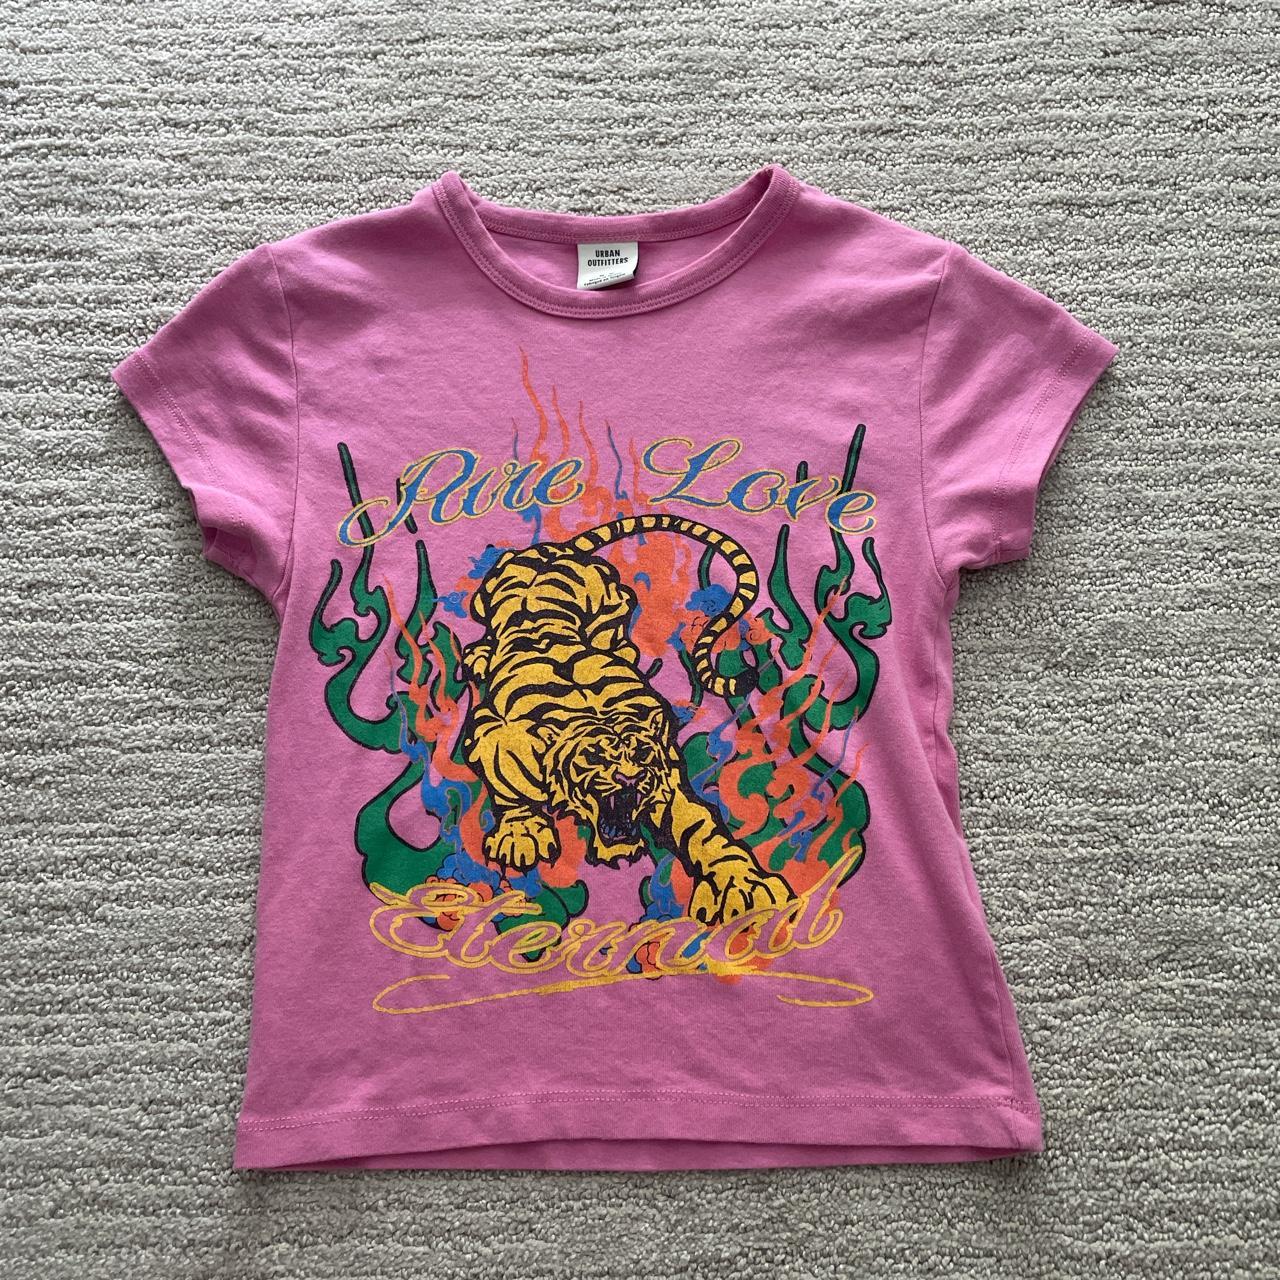 Urban Outfitters Women's Pink T-shirt | Depop